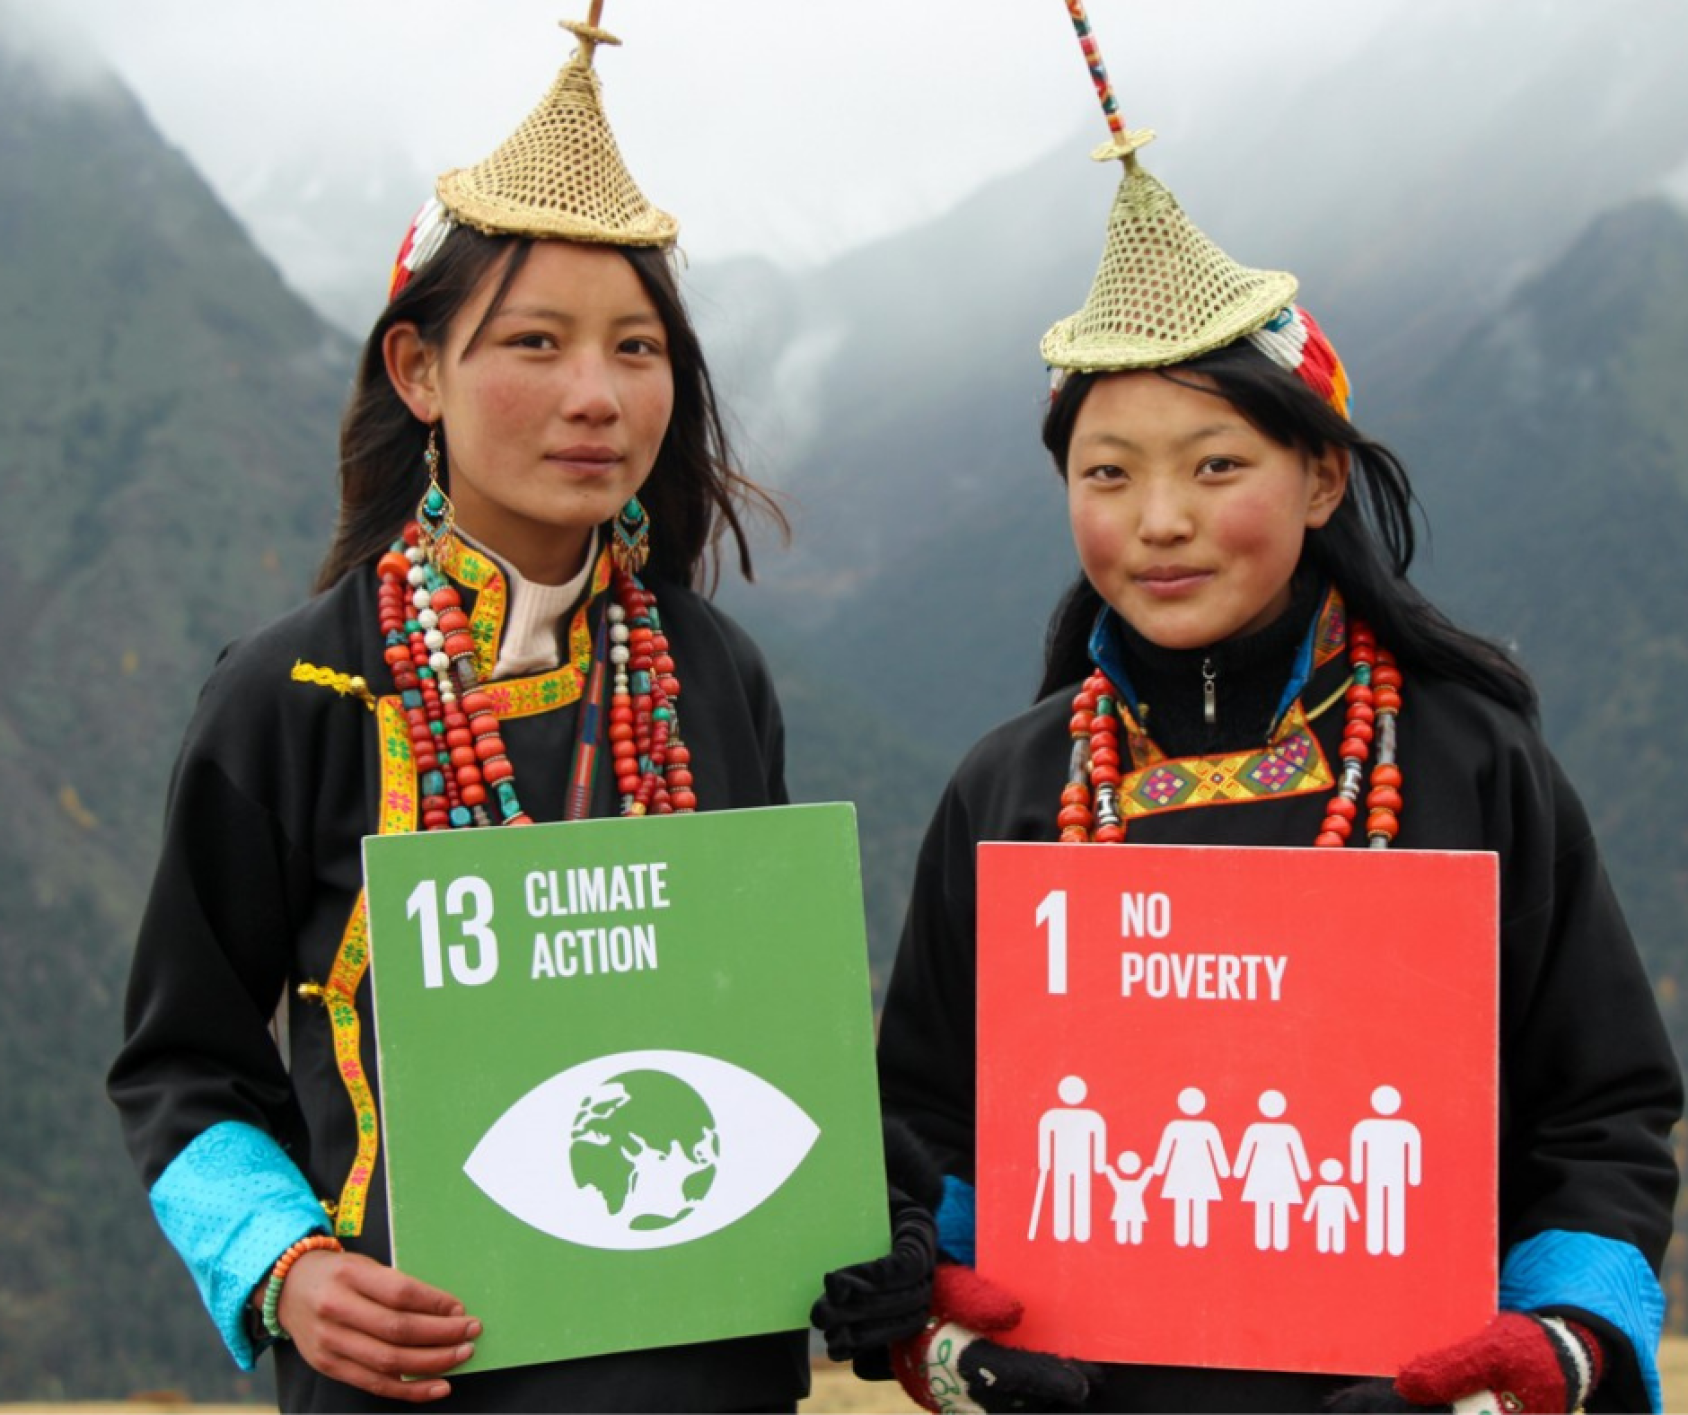 Con montañas y nubes como fondo, primer plano de dos jóvenes de Bhután con carteles de los ODS13 y ODS1.